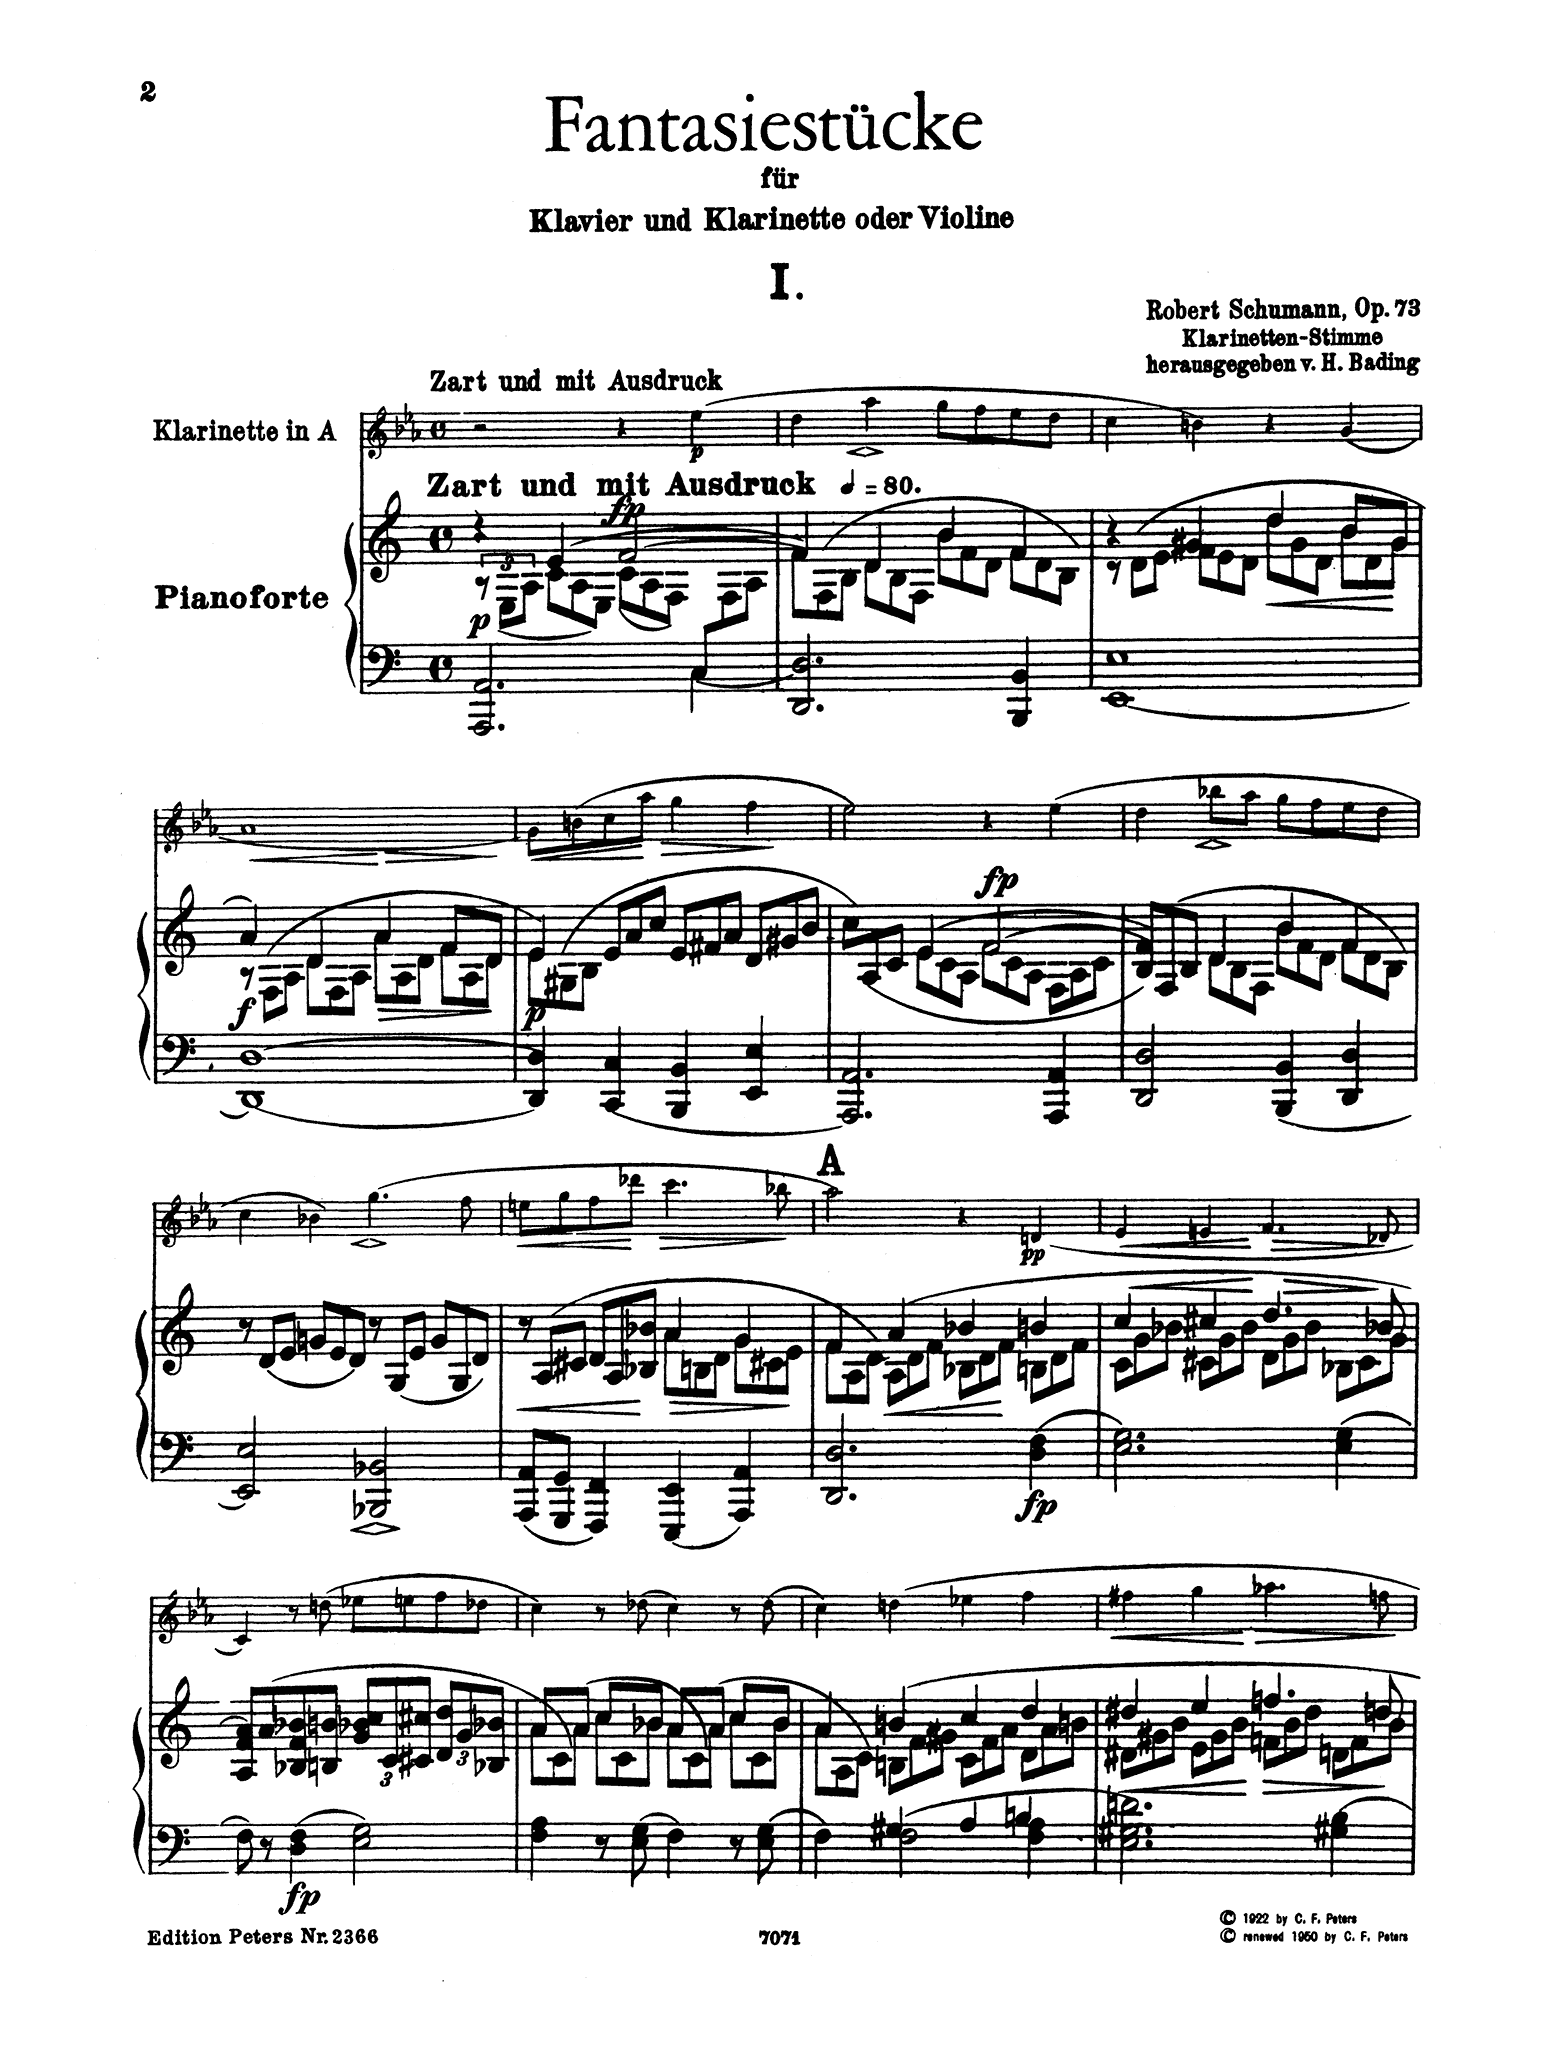 Fantasiestücke, Op. 73 - Movement 1